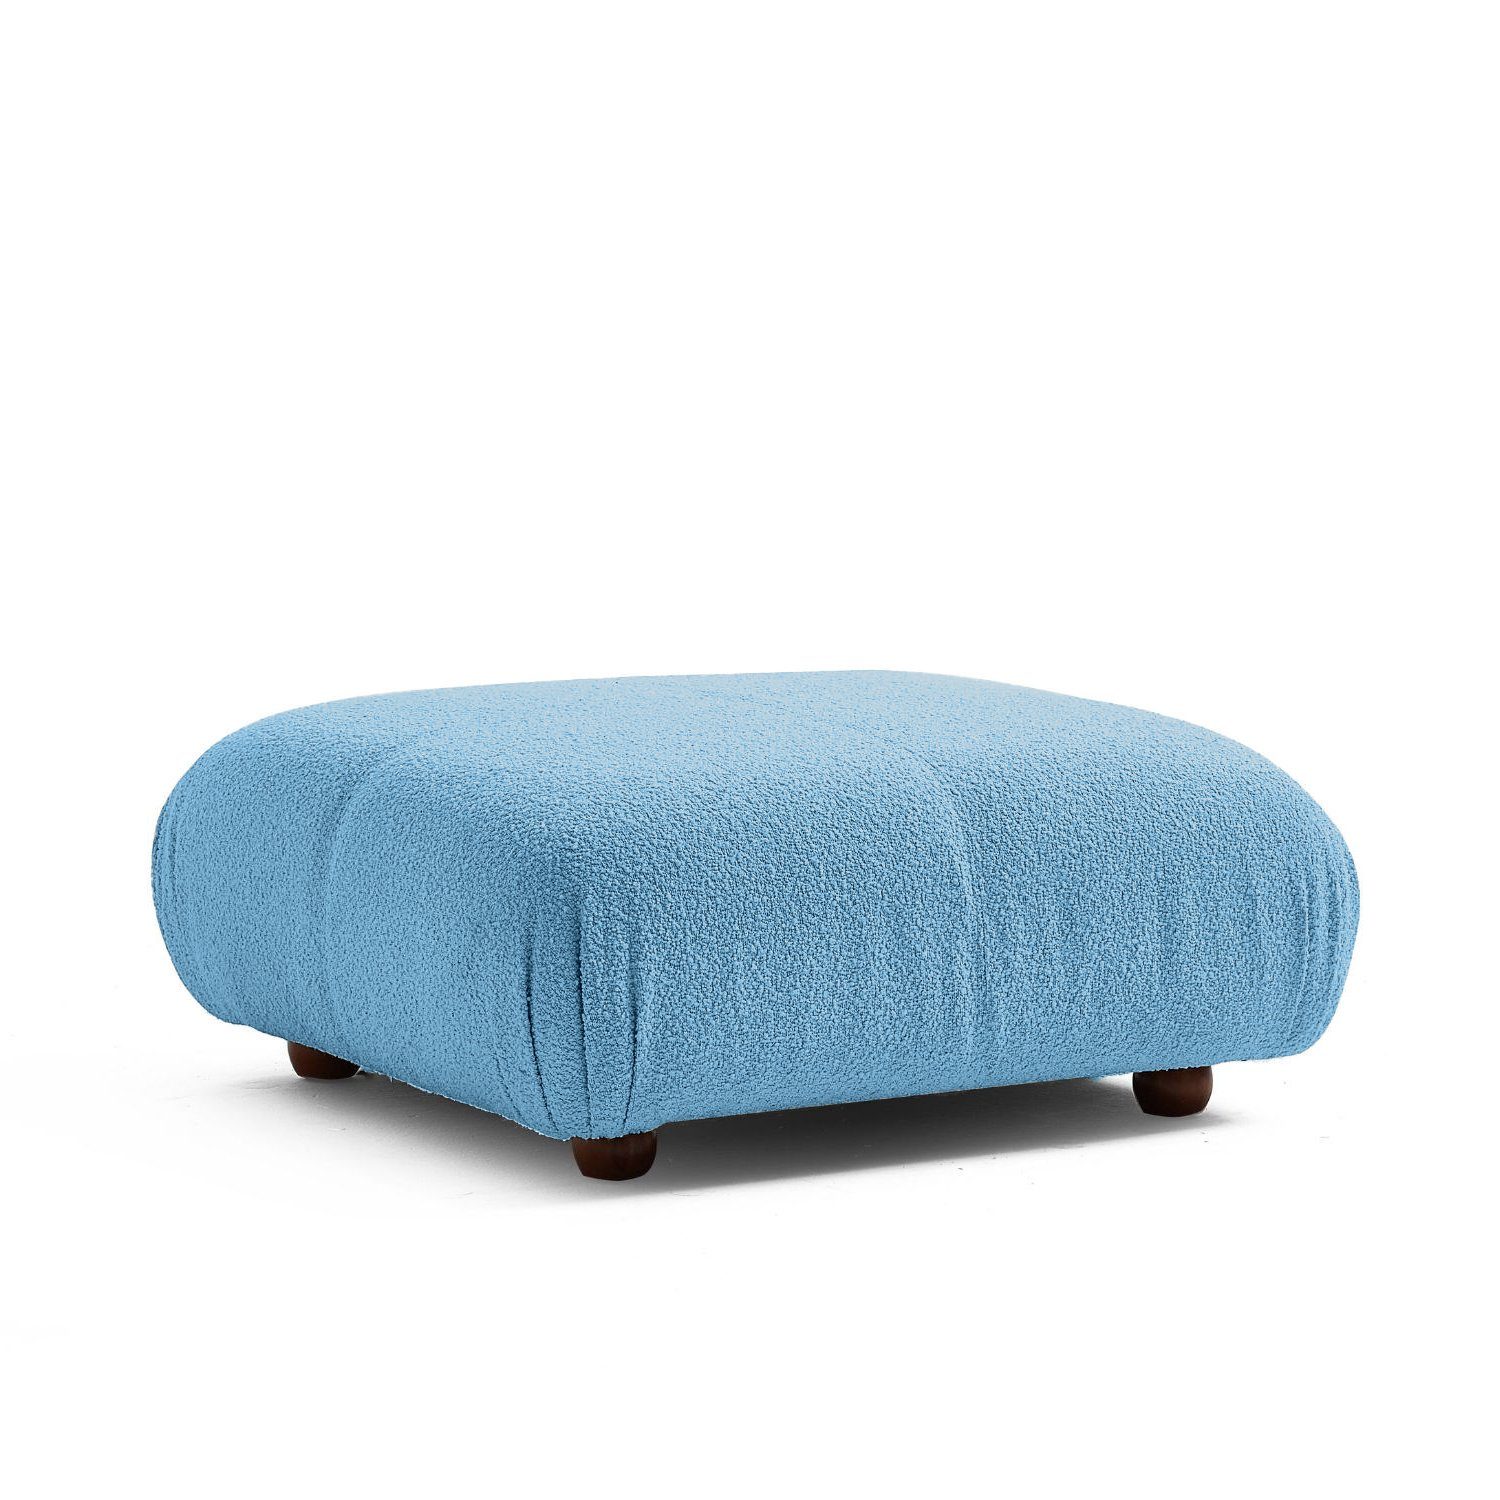 Knuffiges me Sofa Touch Preis neueste und im Sitzmöbel aus Aufbau enthalten! Generation Blau-Lieferung Komfortschaum